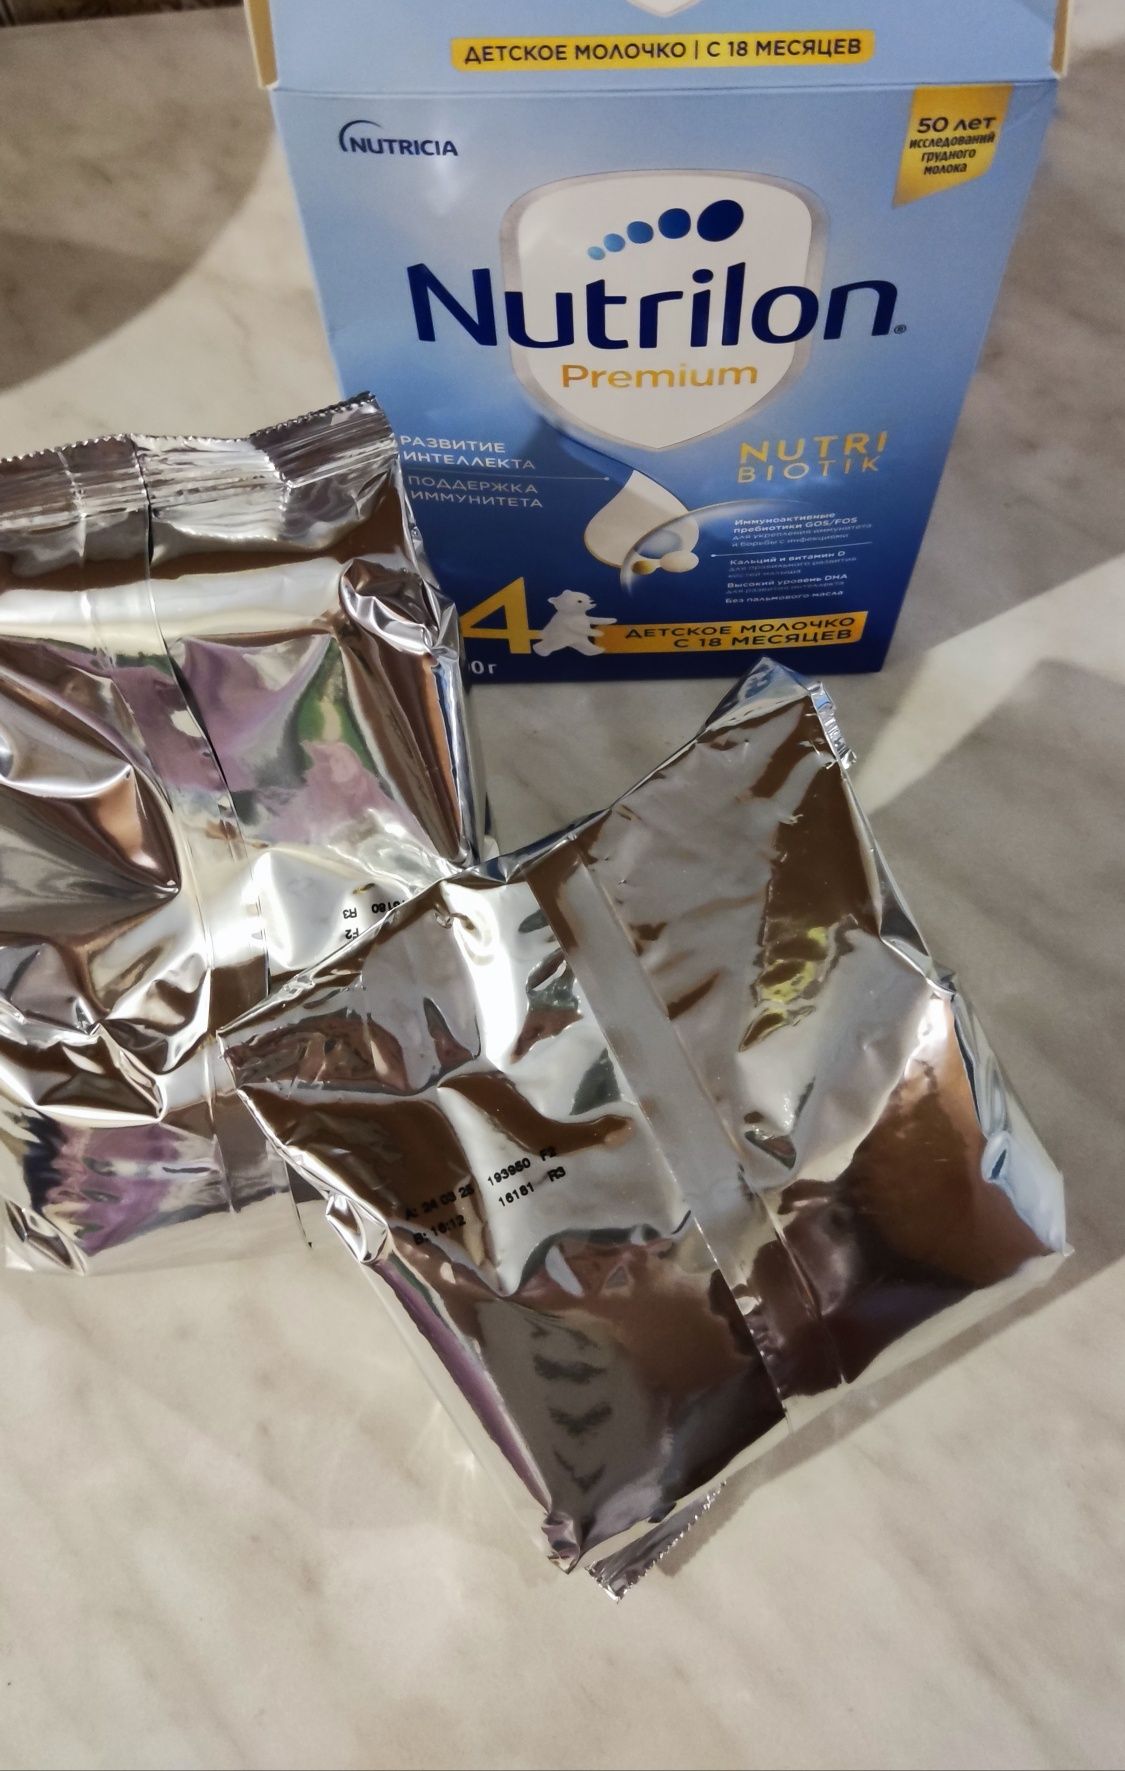 Детская смесь Nutrilon Premium 4